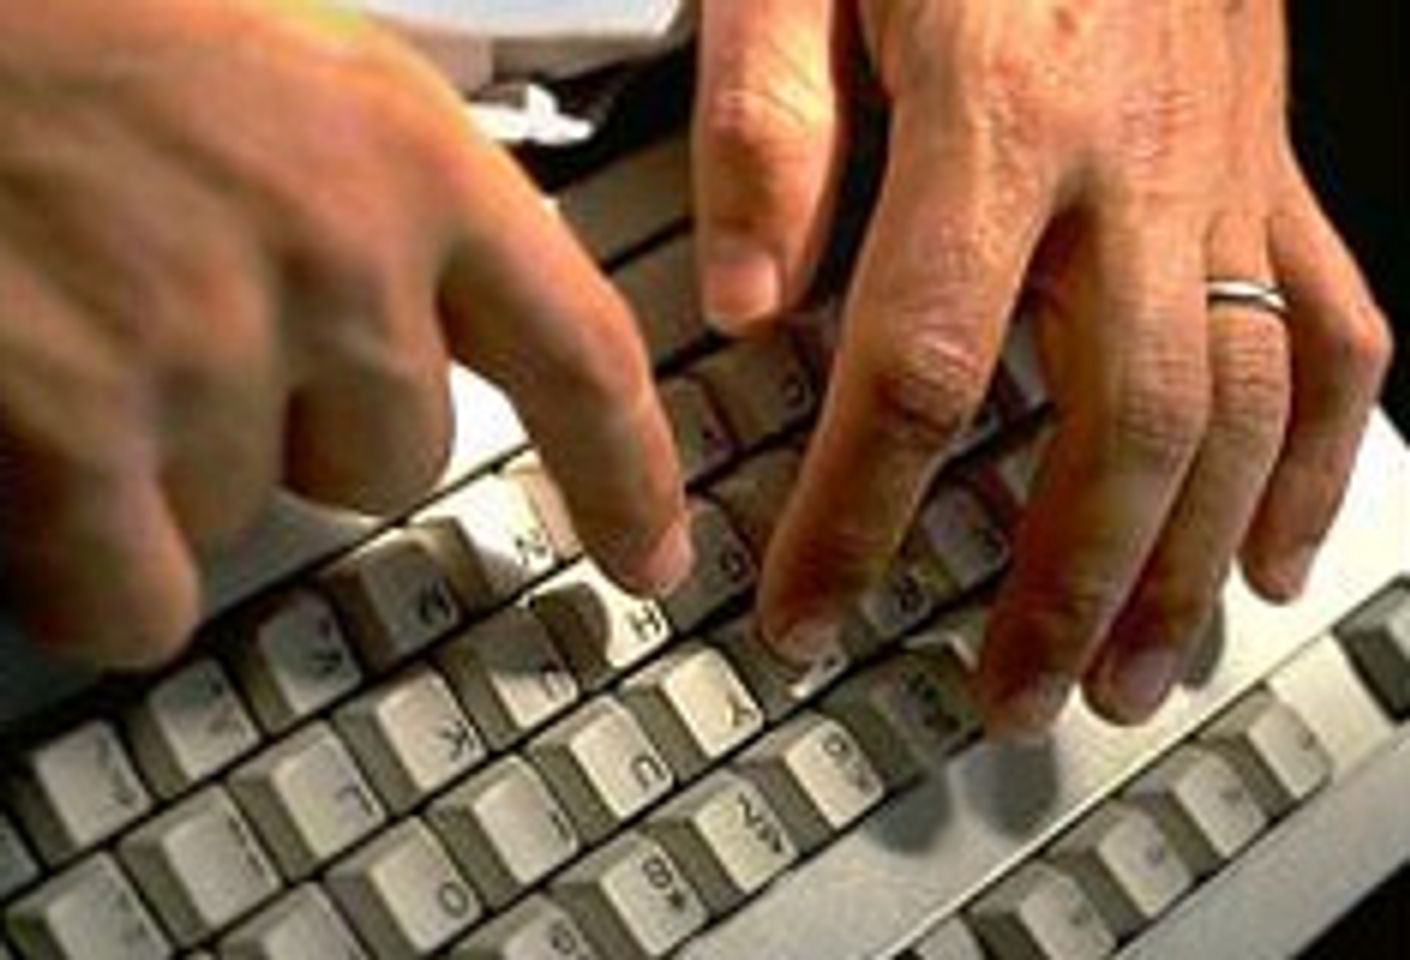 Blogging Bad Day On Job Gets U.K. Worker Canned